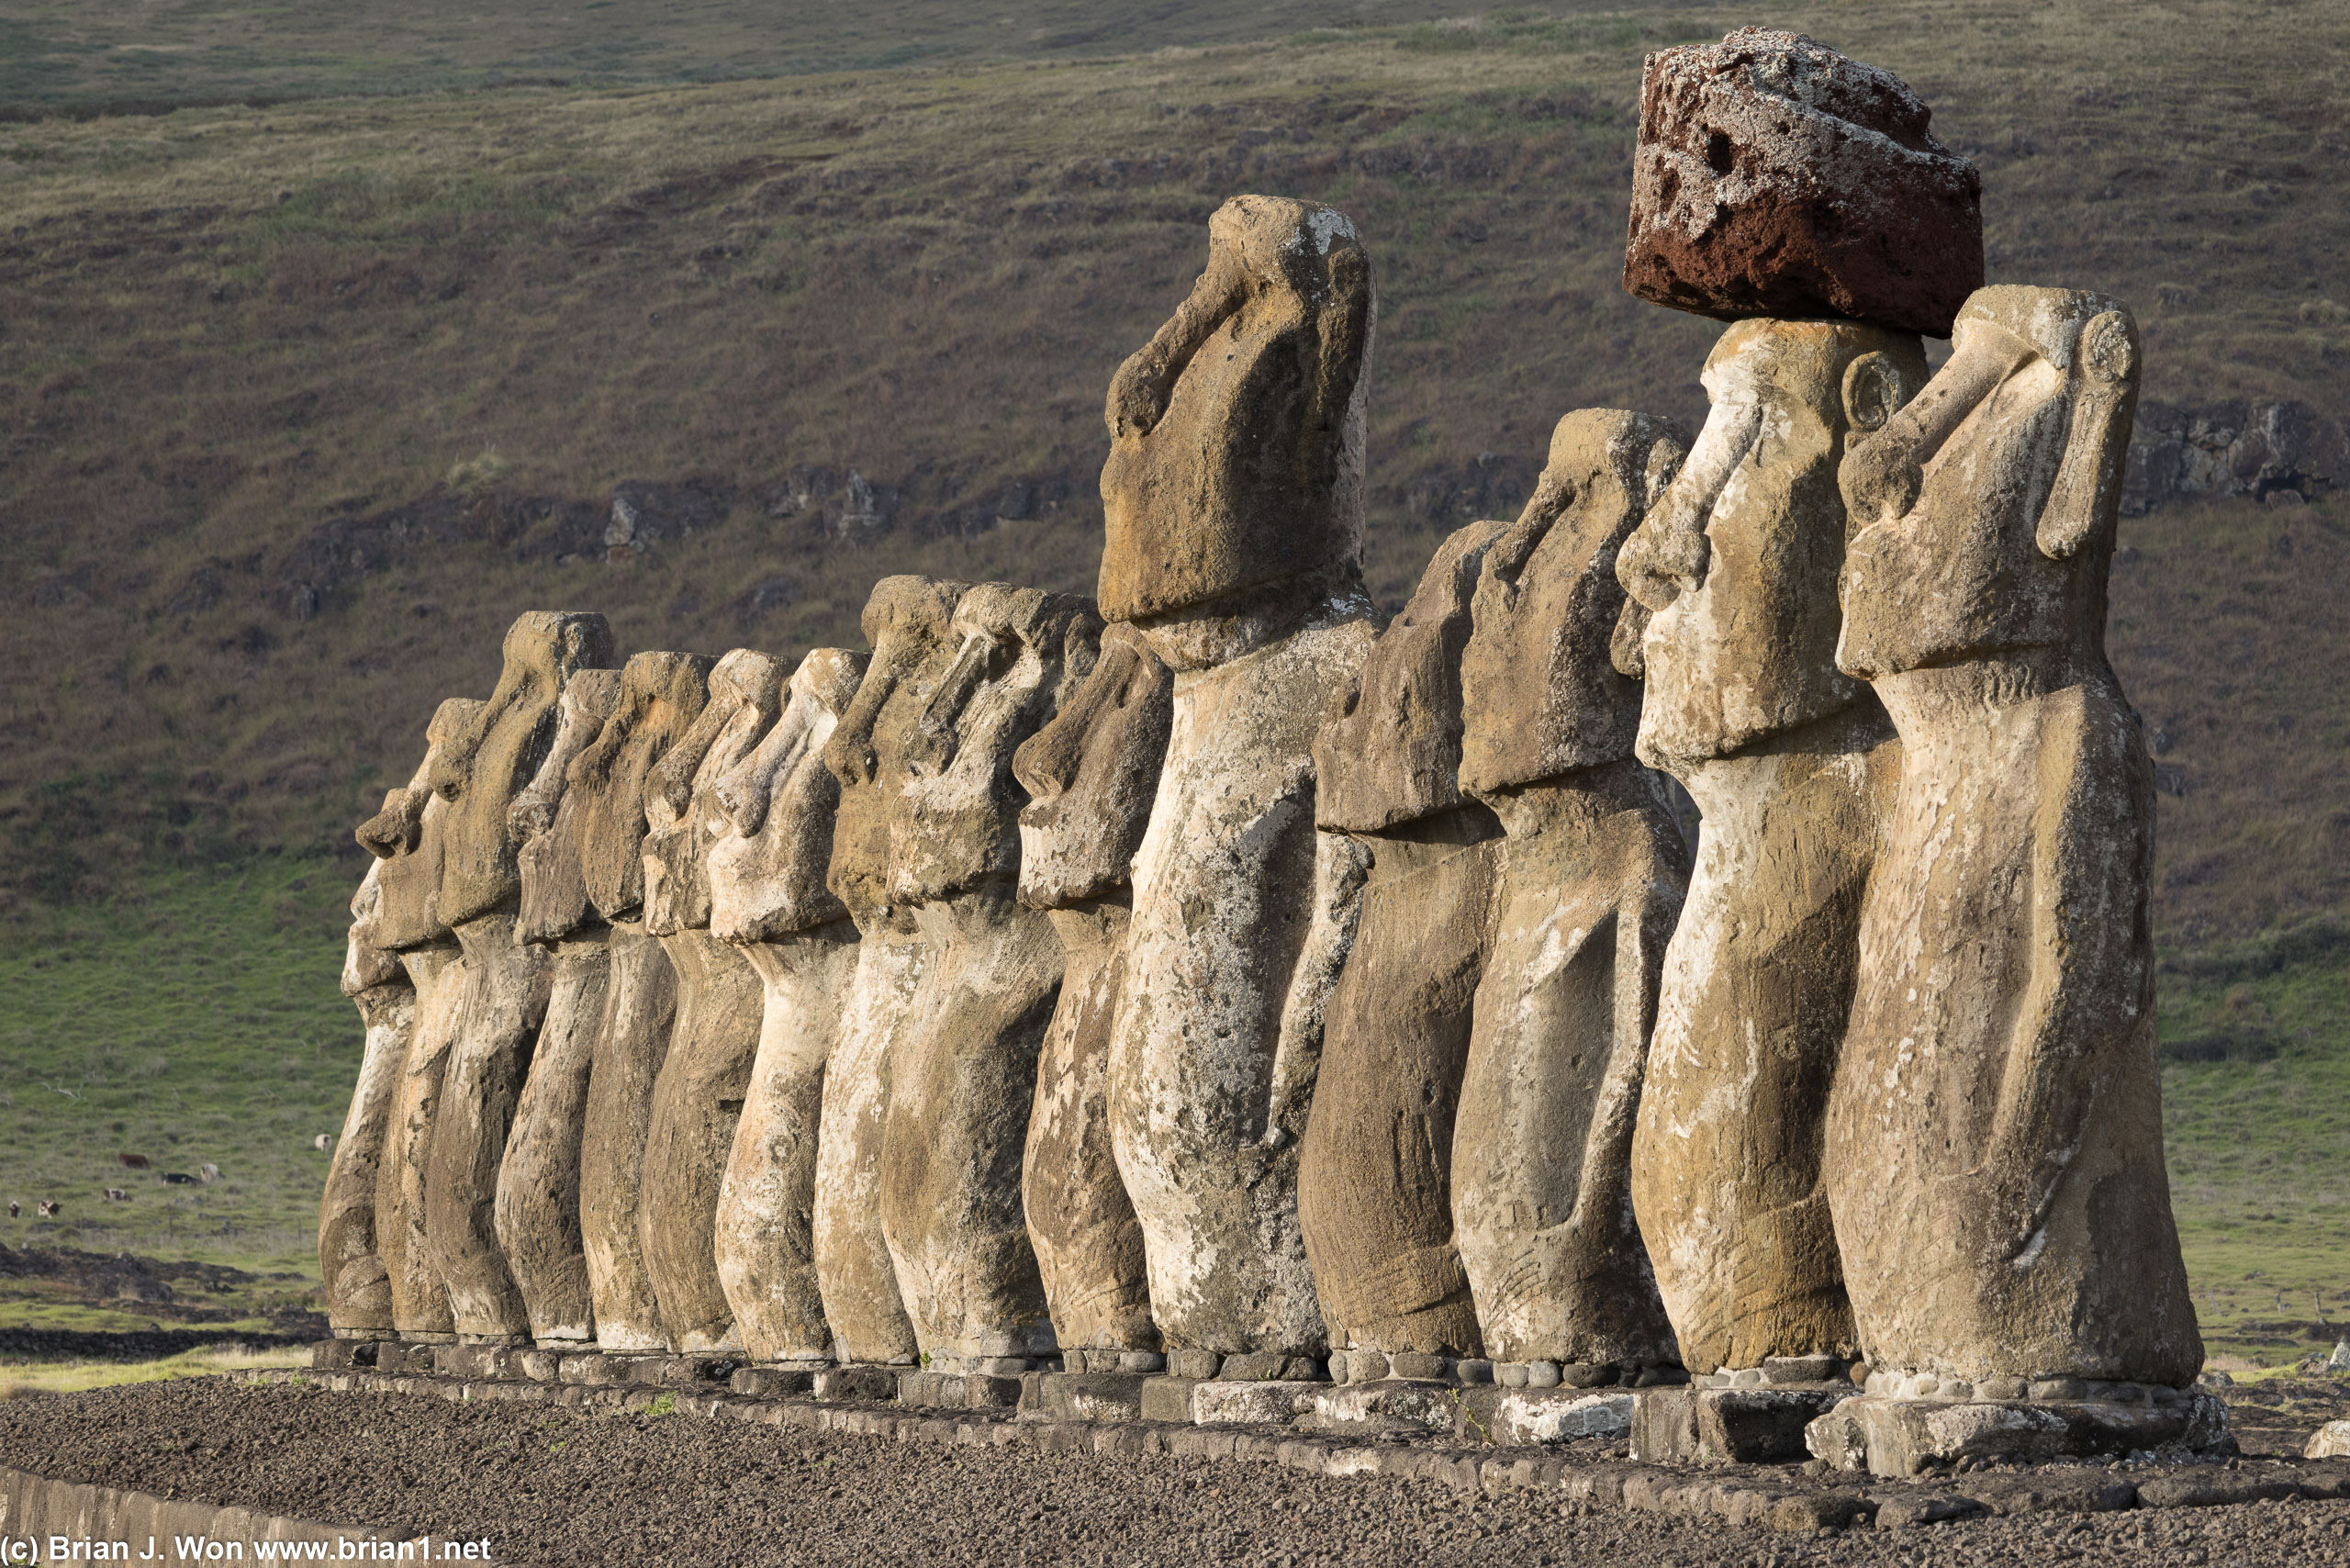 All fifteen moai at Ahu Tongariki.